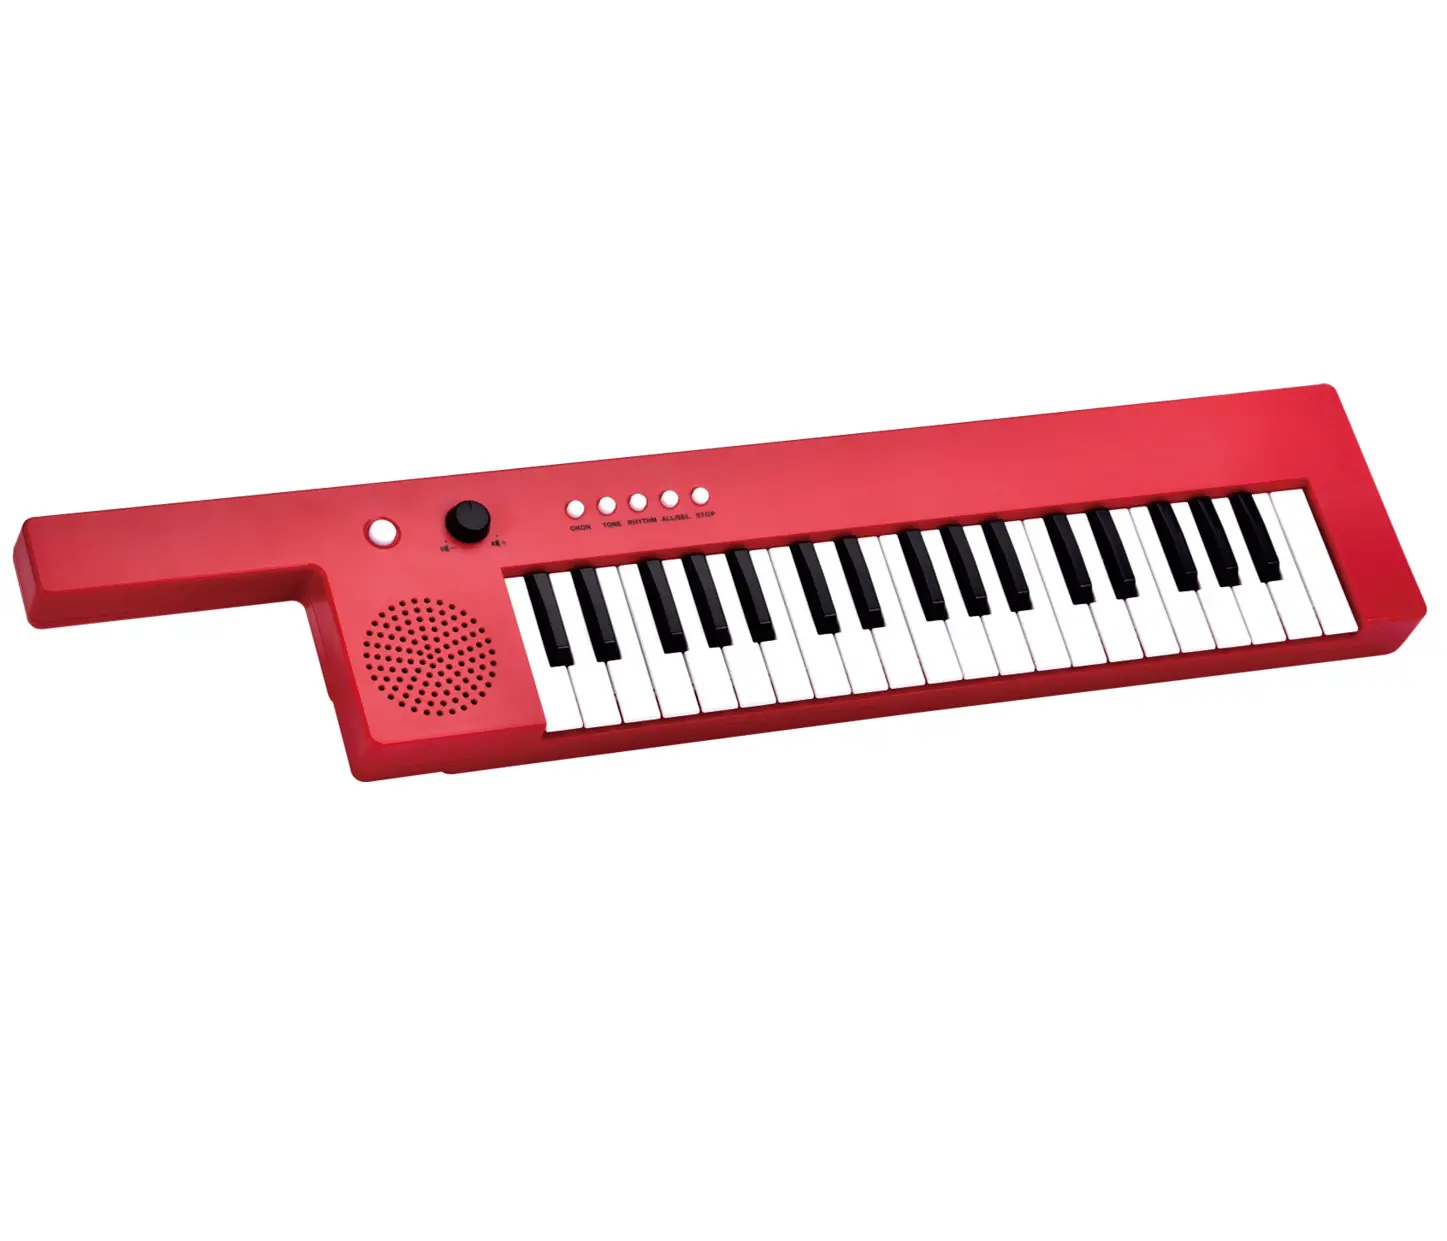 Çocuk elektronik org 37 anahtar oyuncak piyano klavyesi enstrüman müzik enstrümanı hediye